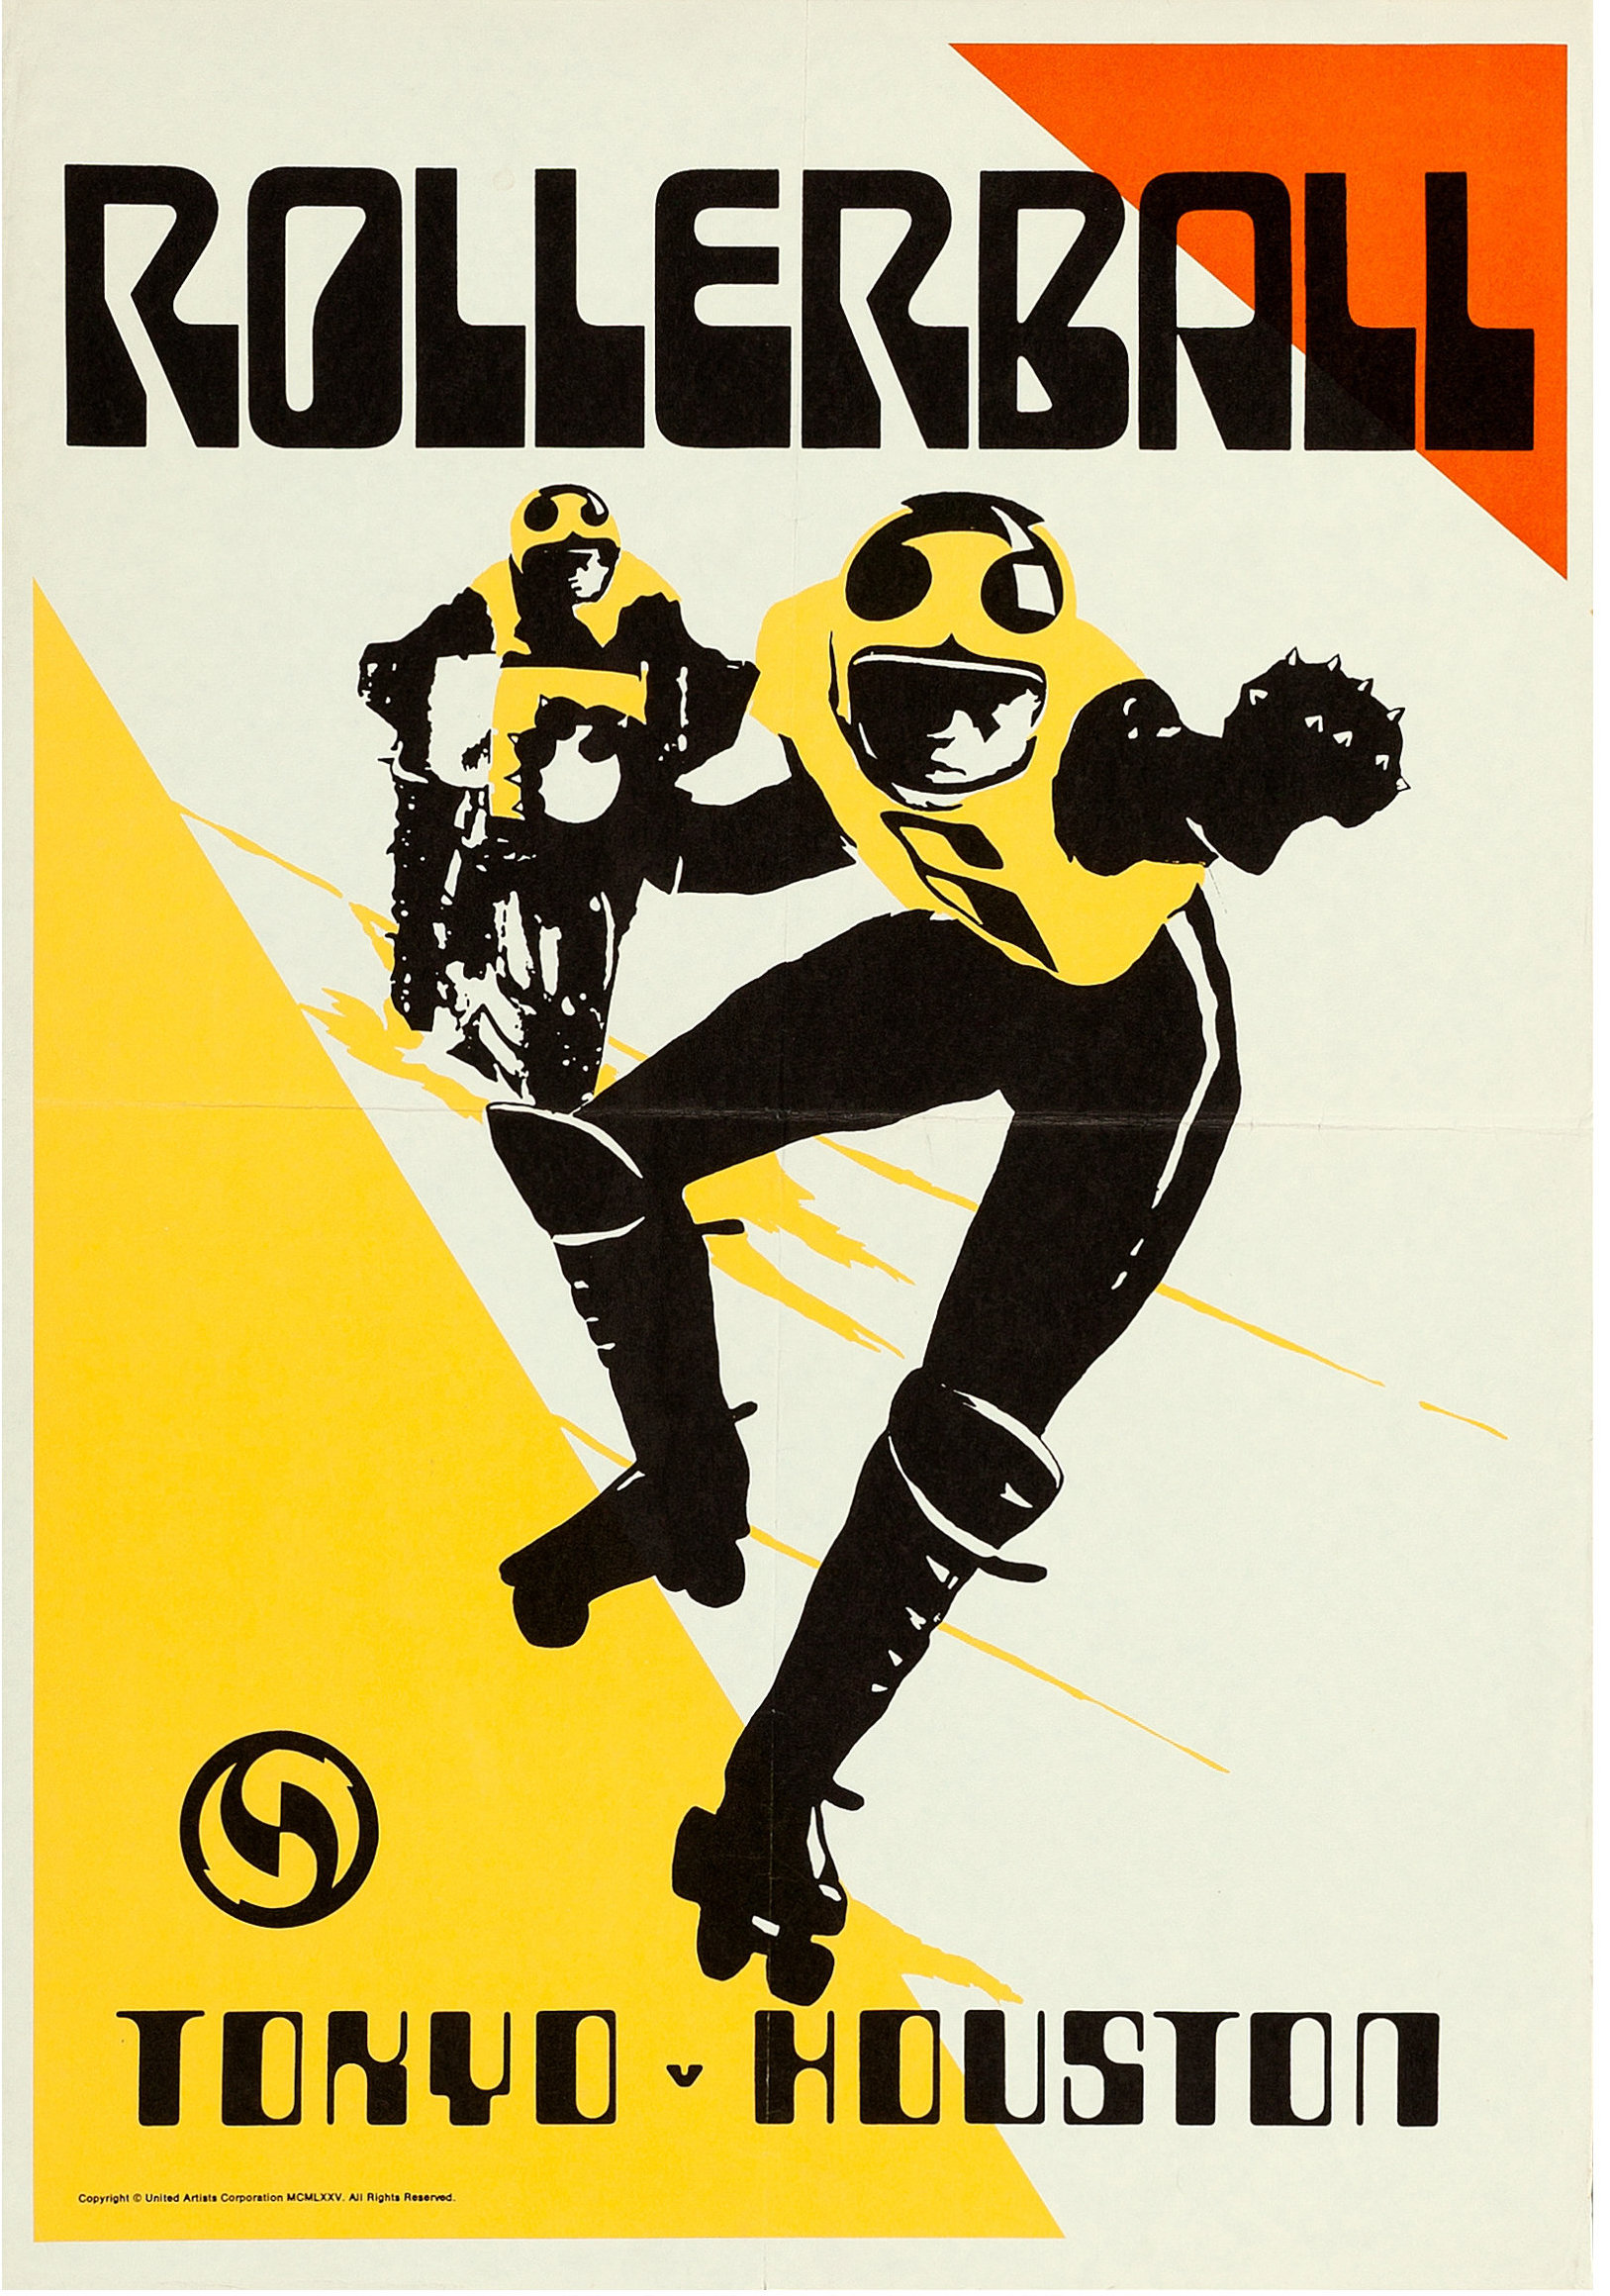 Rollerball (1975) Bob Peak poster